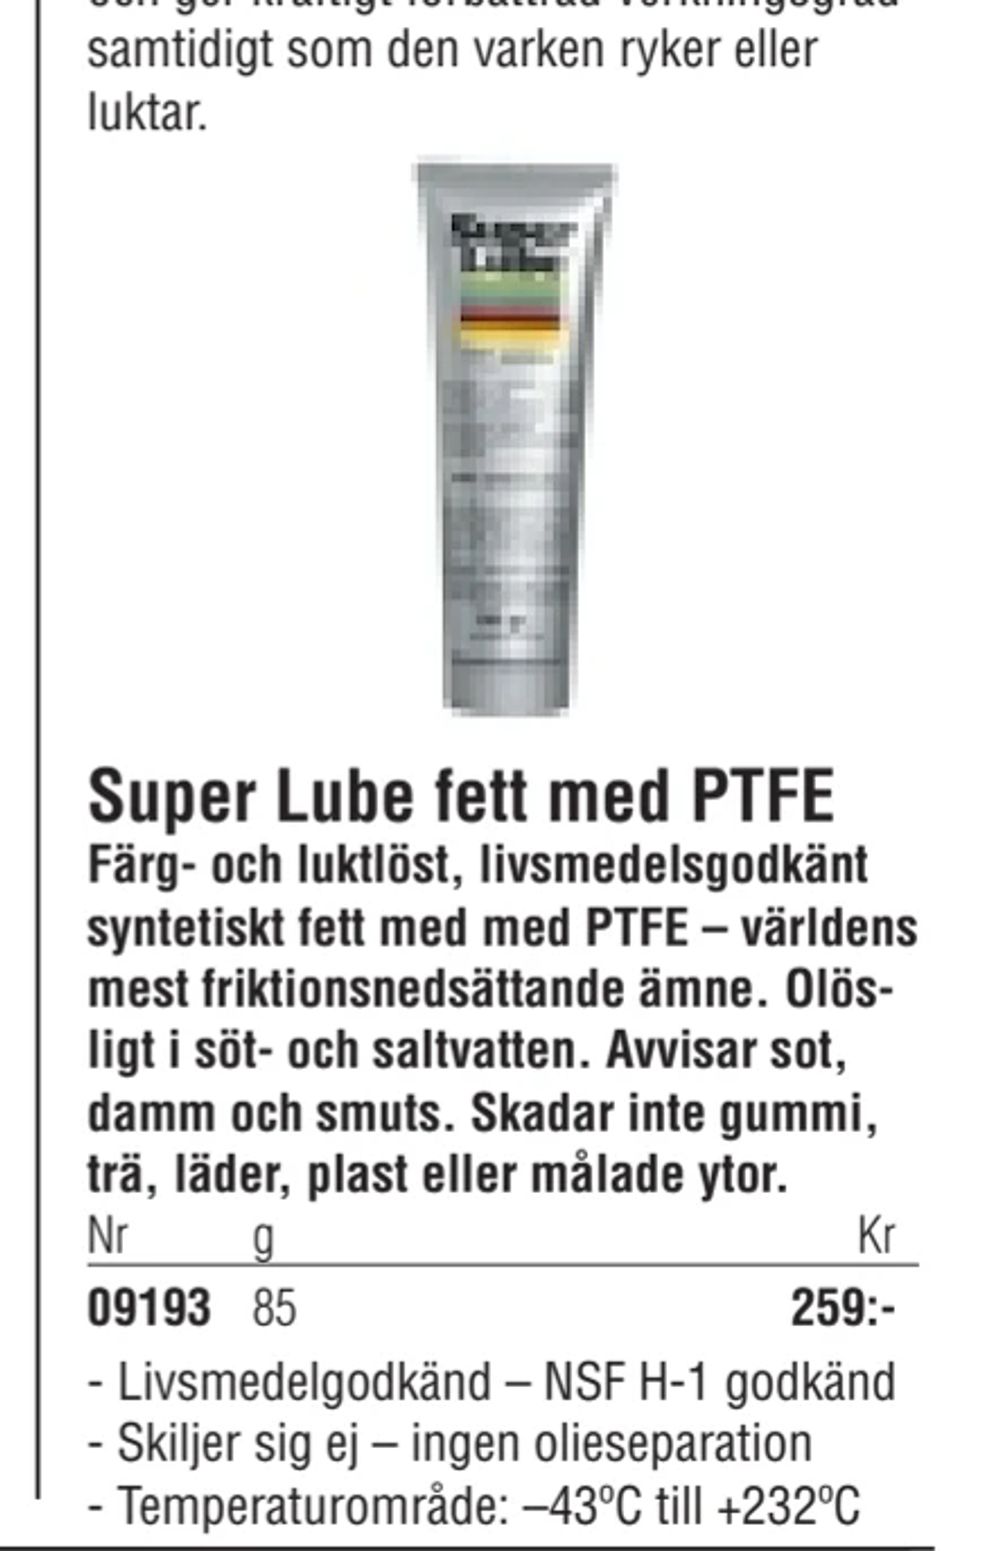 Erbjudanden på Super Lube fett med PTFE från Erlandsons Brygga för 259 kr